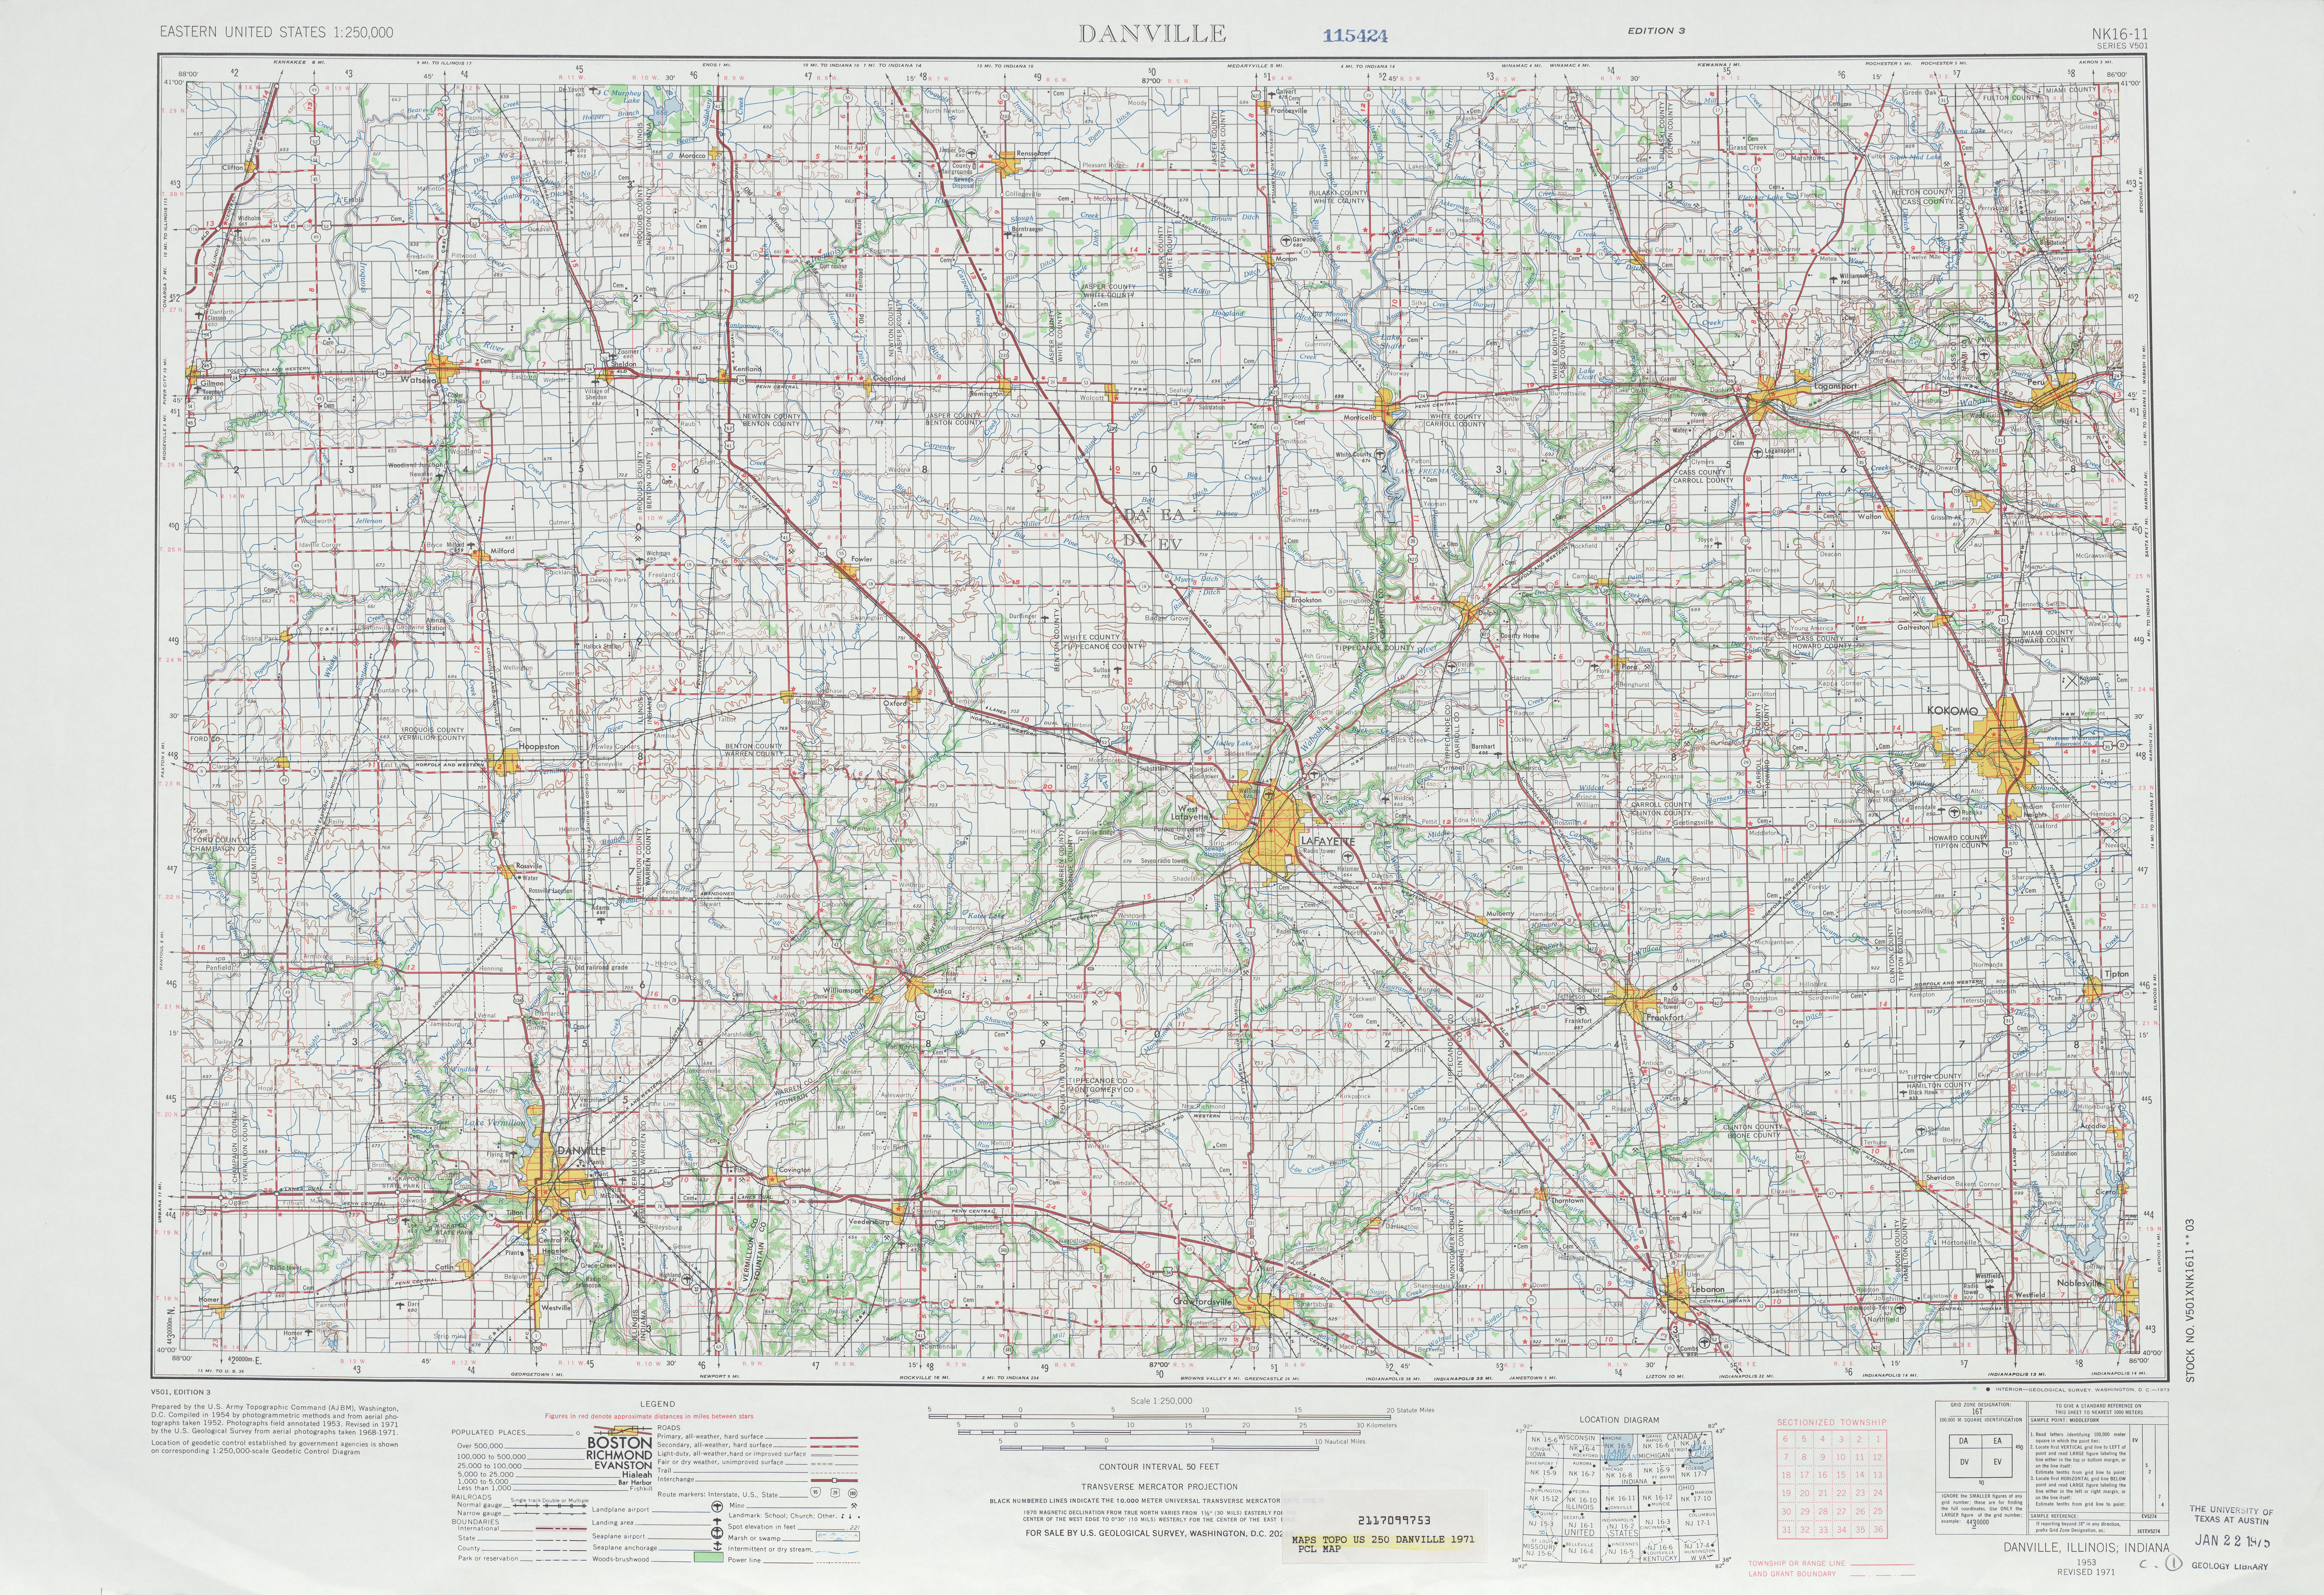 Hoja Danville del Mapa Topográfico de los Estados Unidos 1971